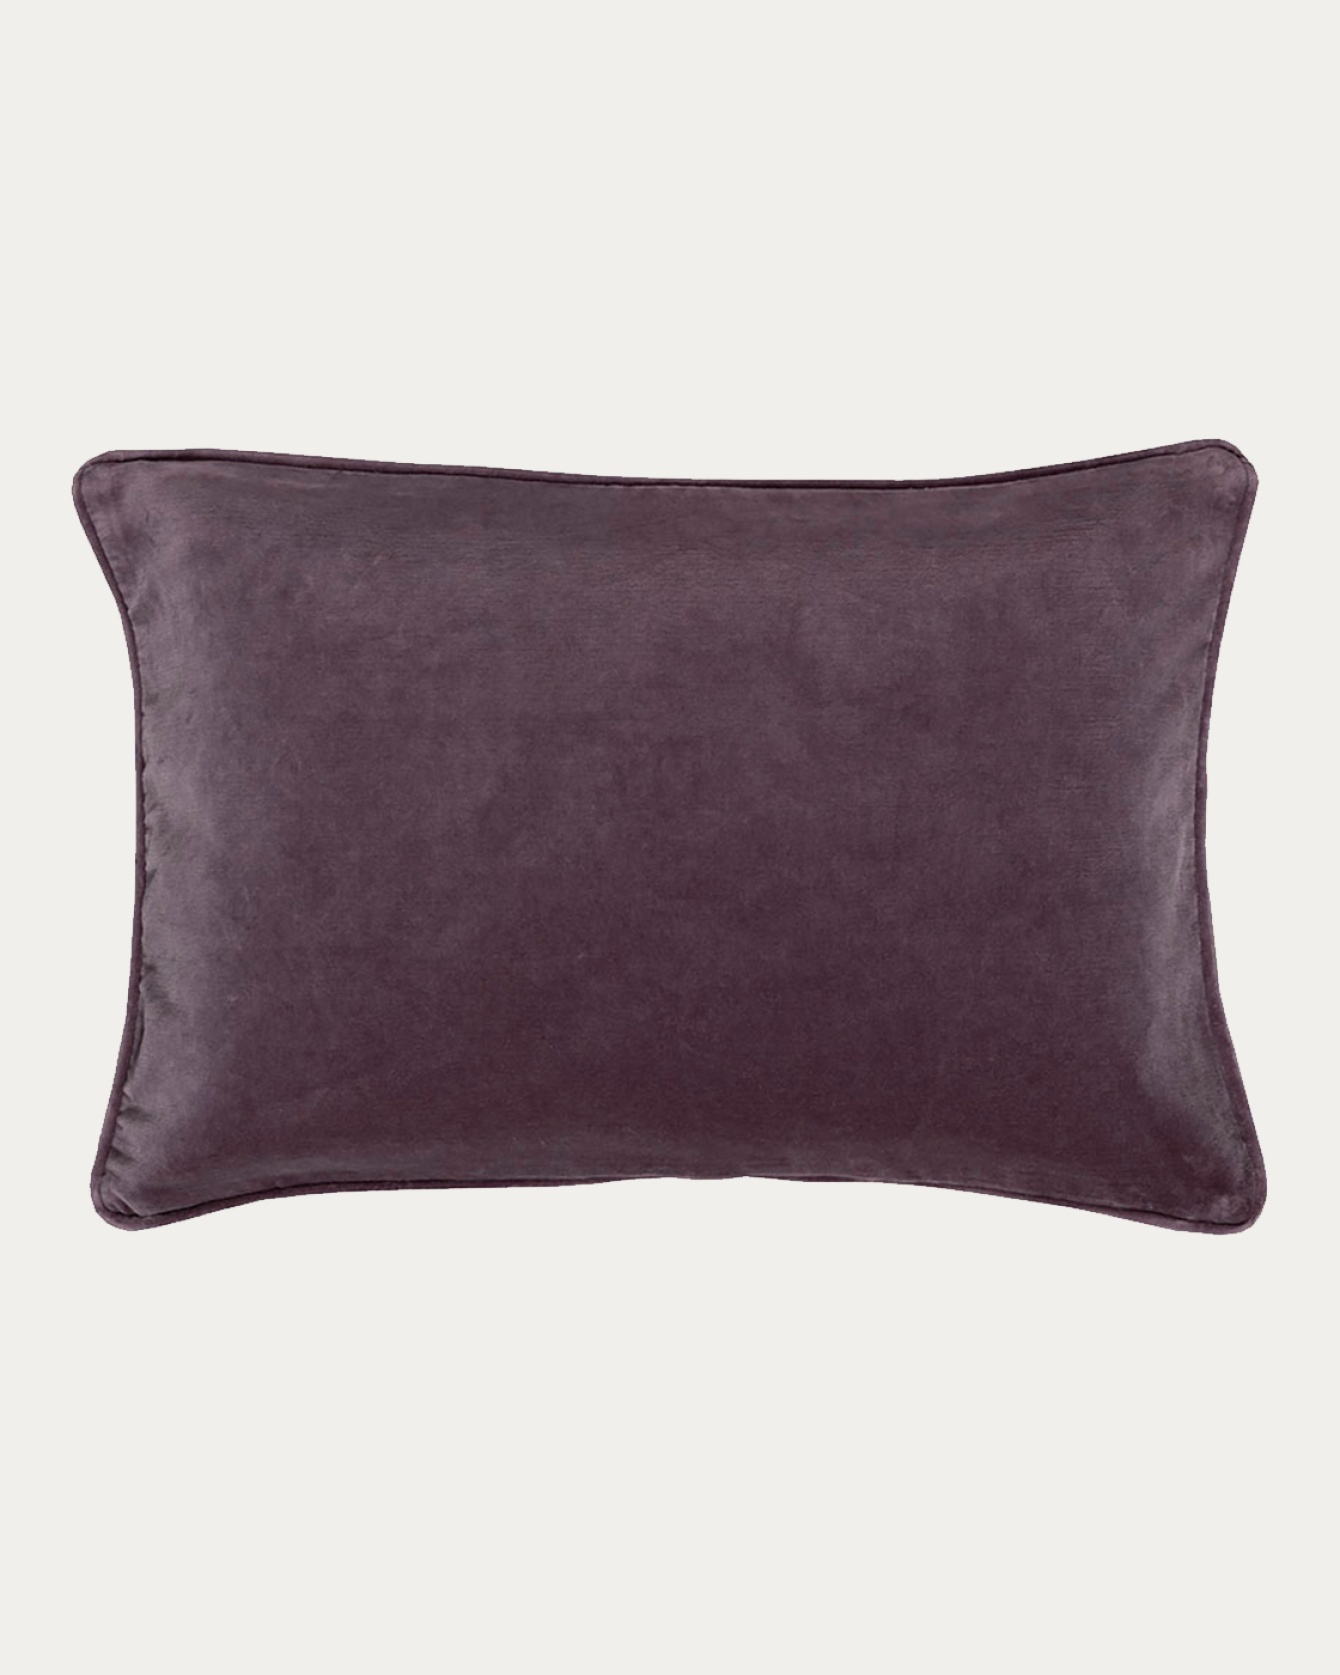 PAOLO Cushion cover 40x60 cm Dawn purple